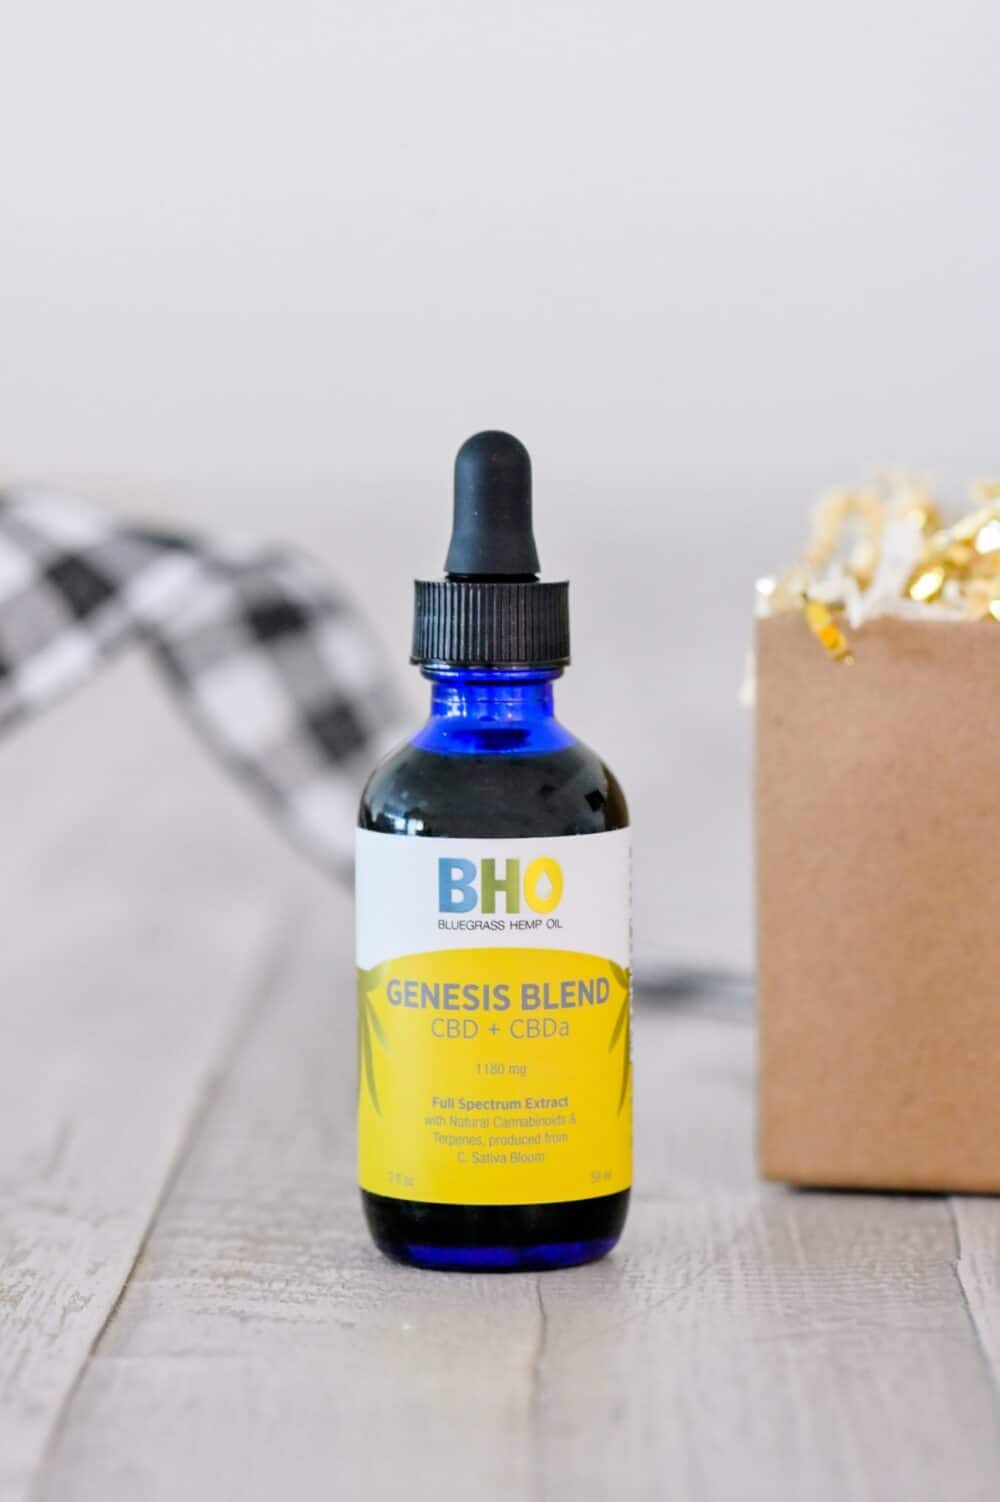 A close-up image of a bottle of Genesis Blend CBD + CBDa oil from Bluegrass Hemp Oil.